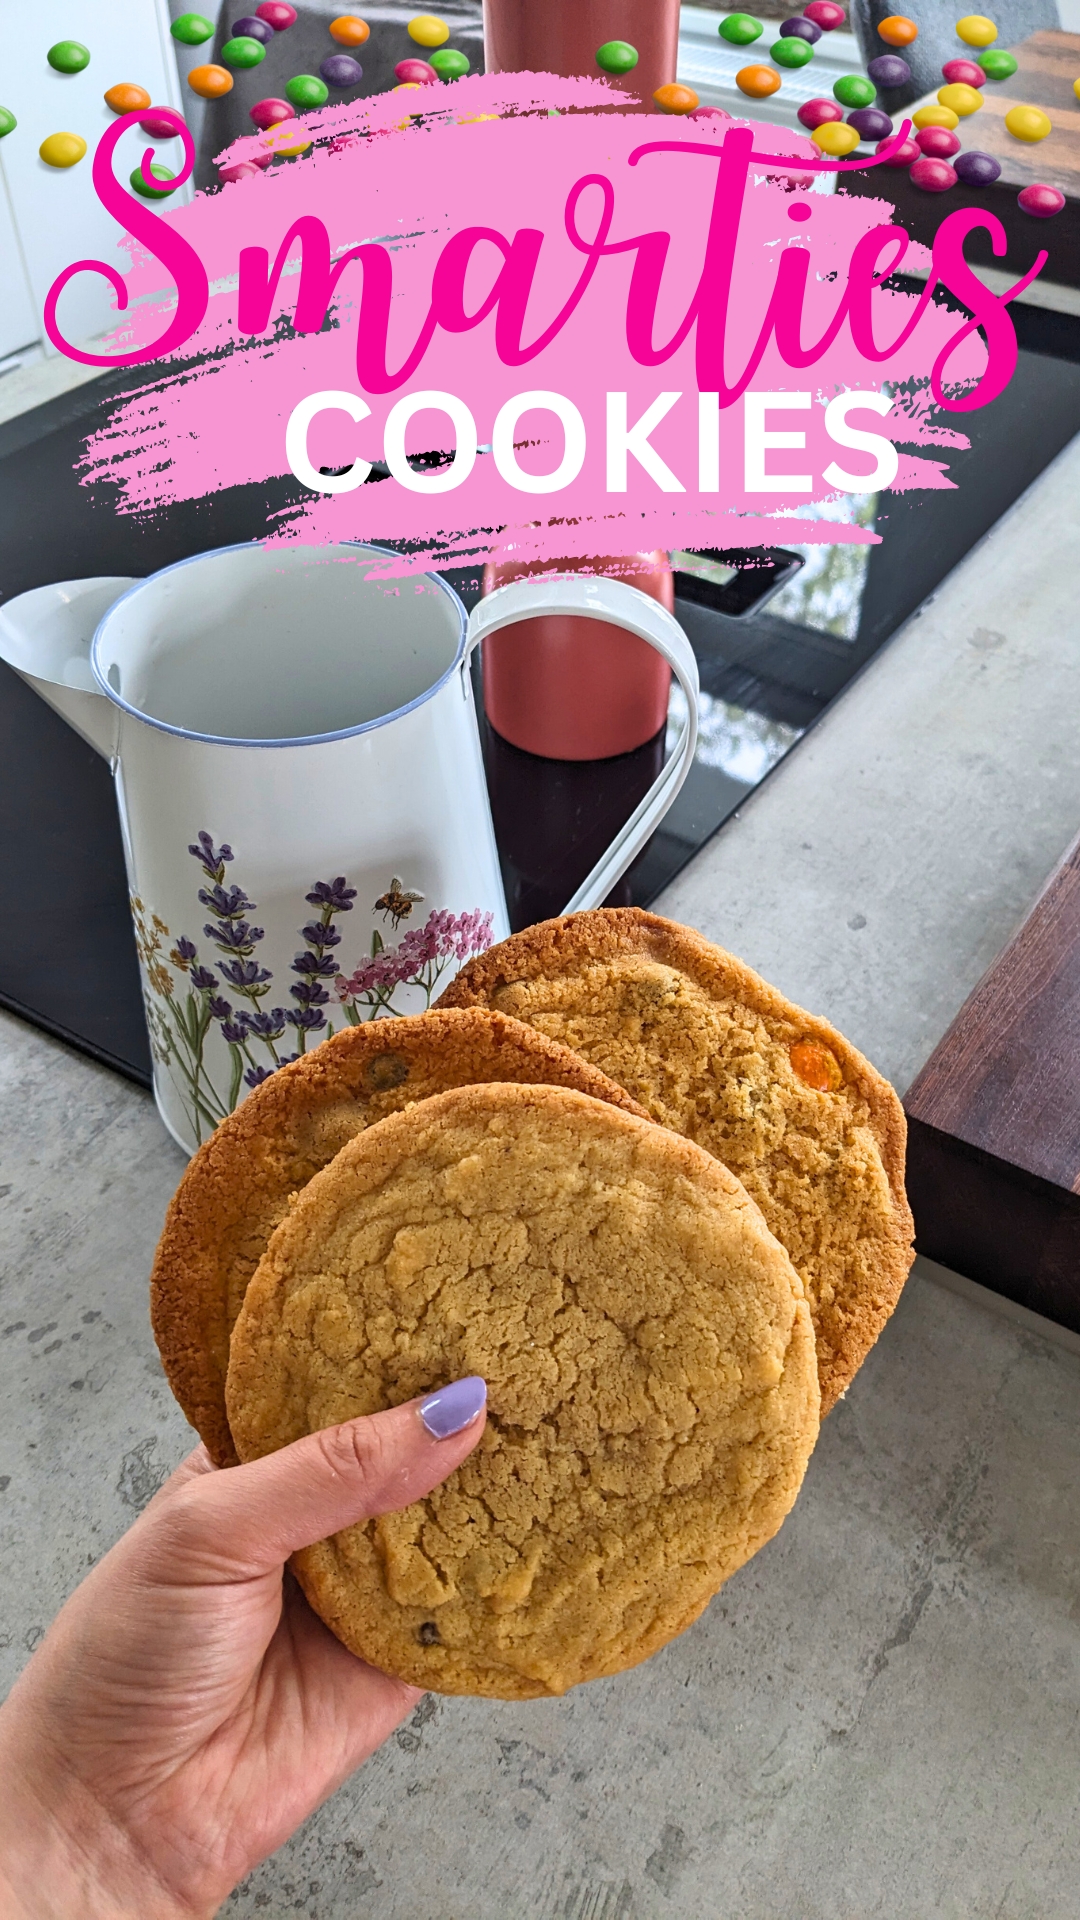 🍪🌈Smarties Cookies 👌

Das Rezept für diese herlichen Kekse, habe ich hier unter der Rubrik "Rezepte" hochgeladen.

#kekse #backen #cookies